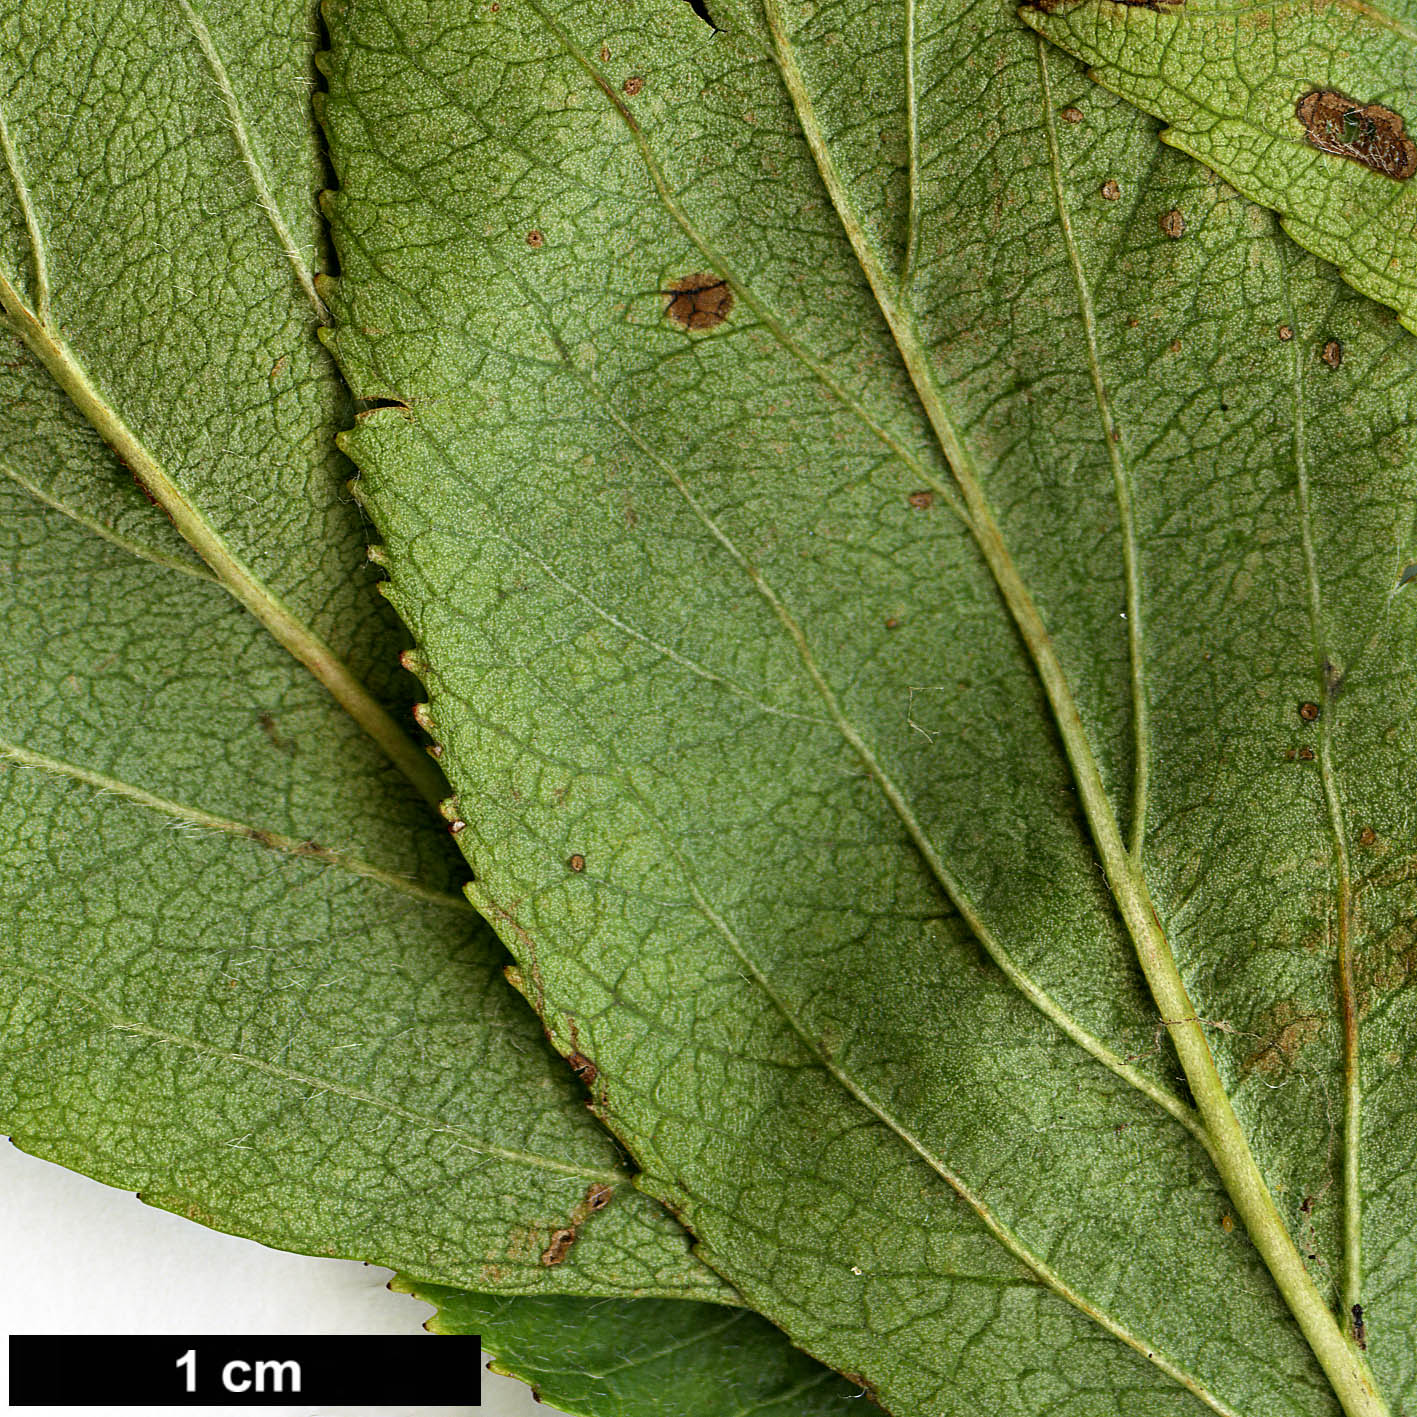 High resolution image: Family: Rosaceae - Genus: Crataegus - Taxon: rivularis